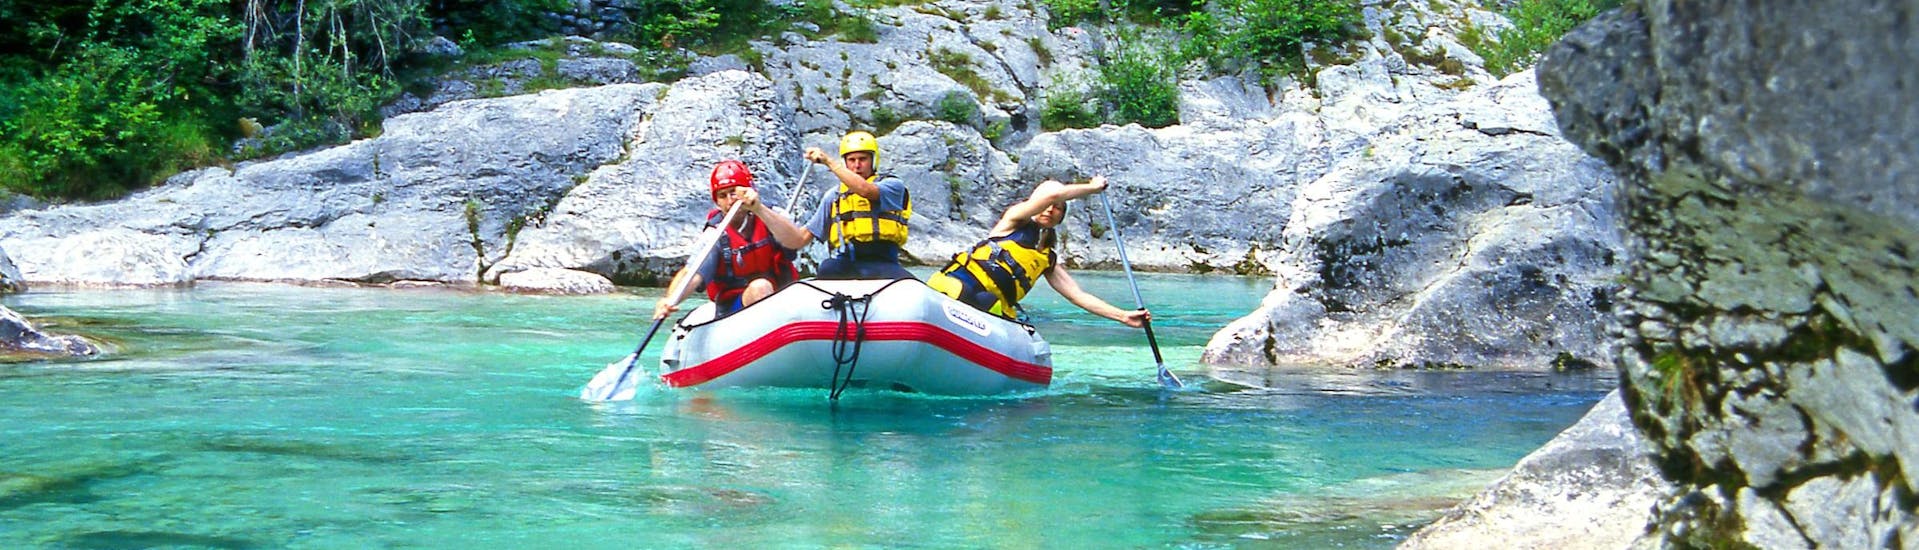 Kobarid: Een groep jongeren geniet van een wildwateravontuur in een van de hotspots voor rafting en canyoning.